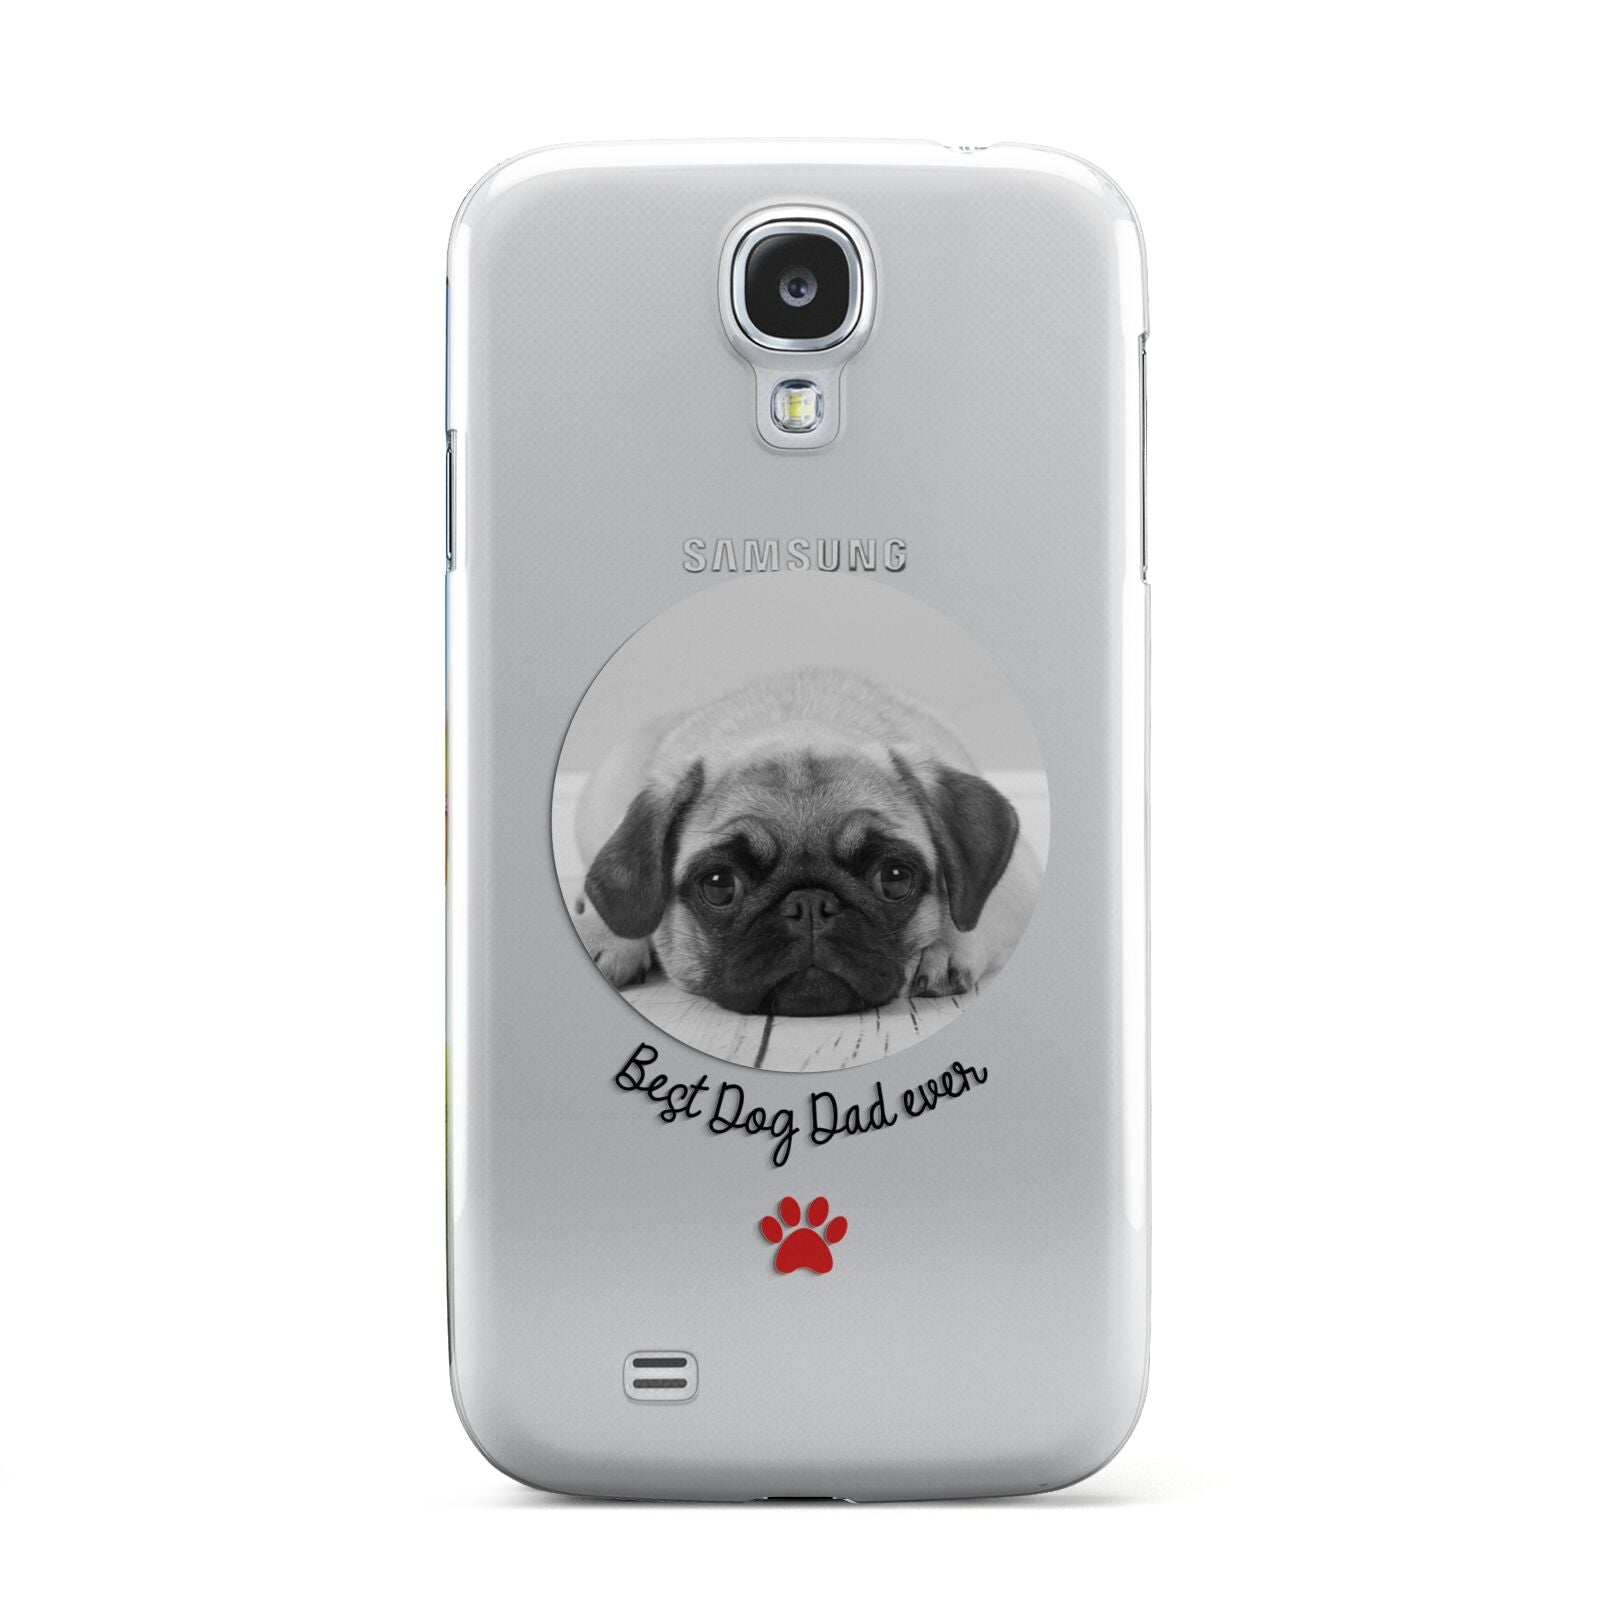 Best Dog Dad Ever Photo Upload Samsung Galaxy S4 Case